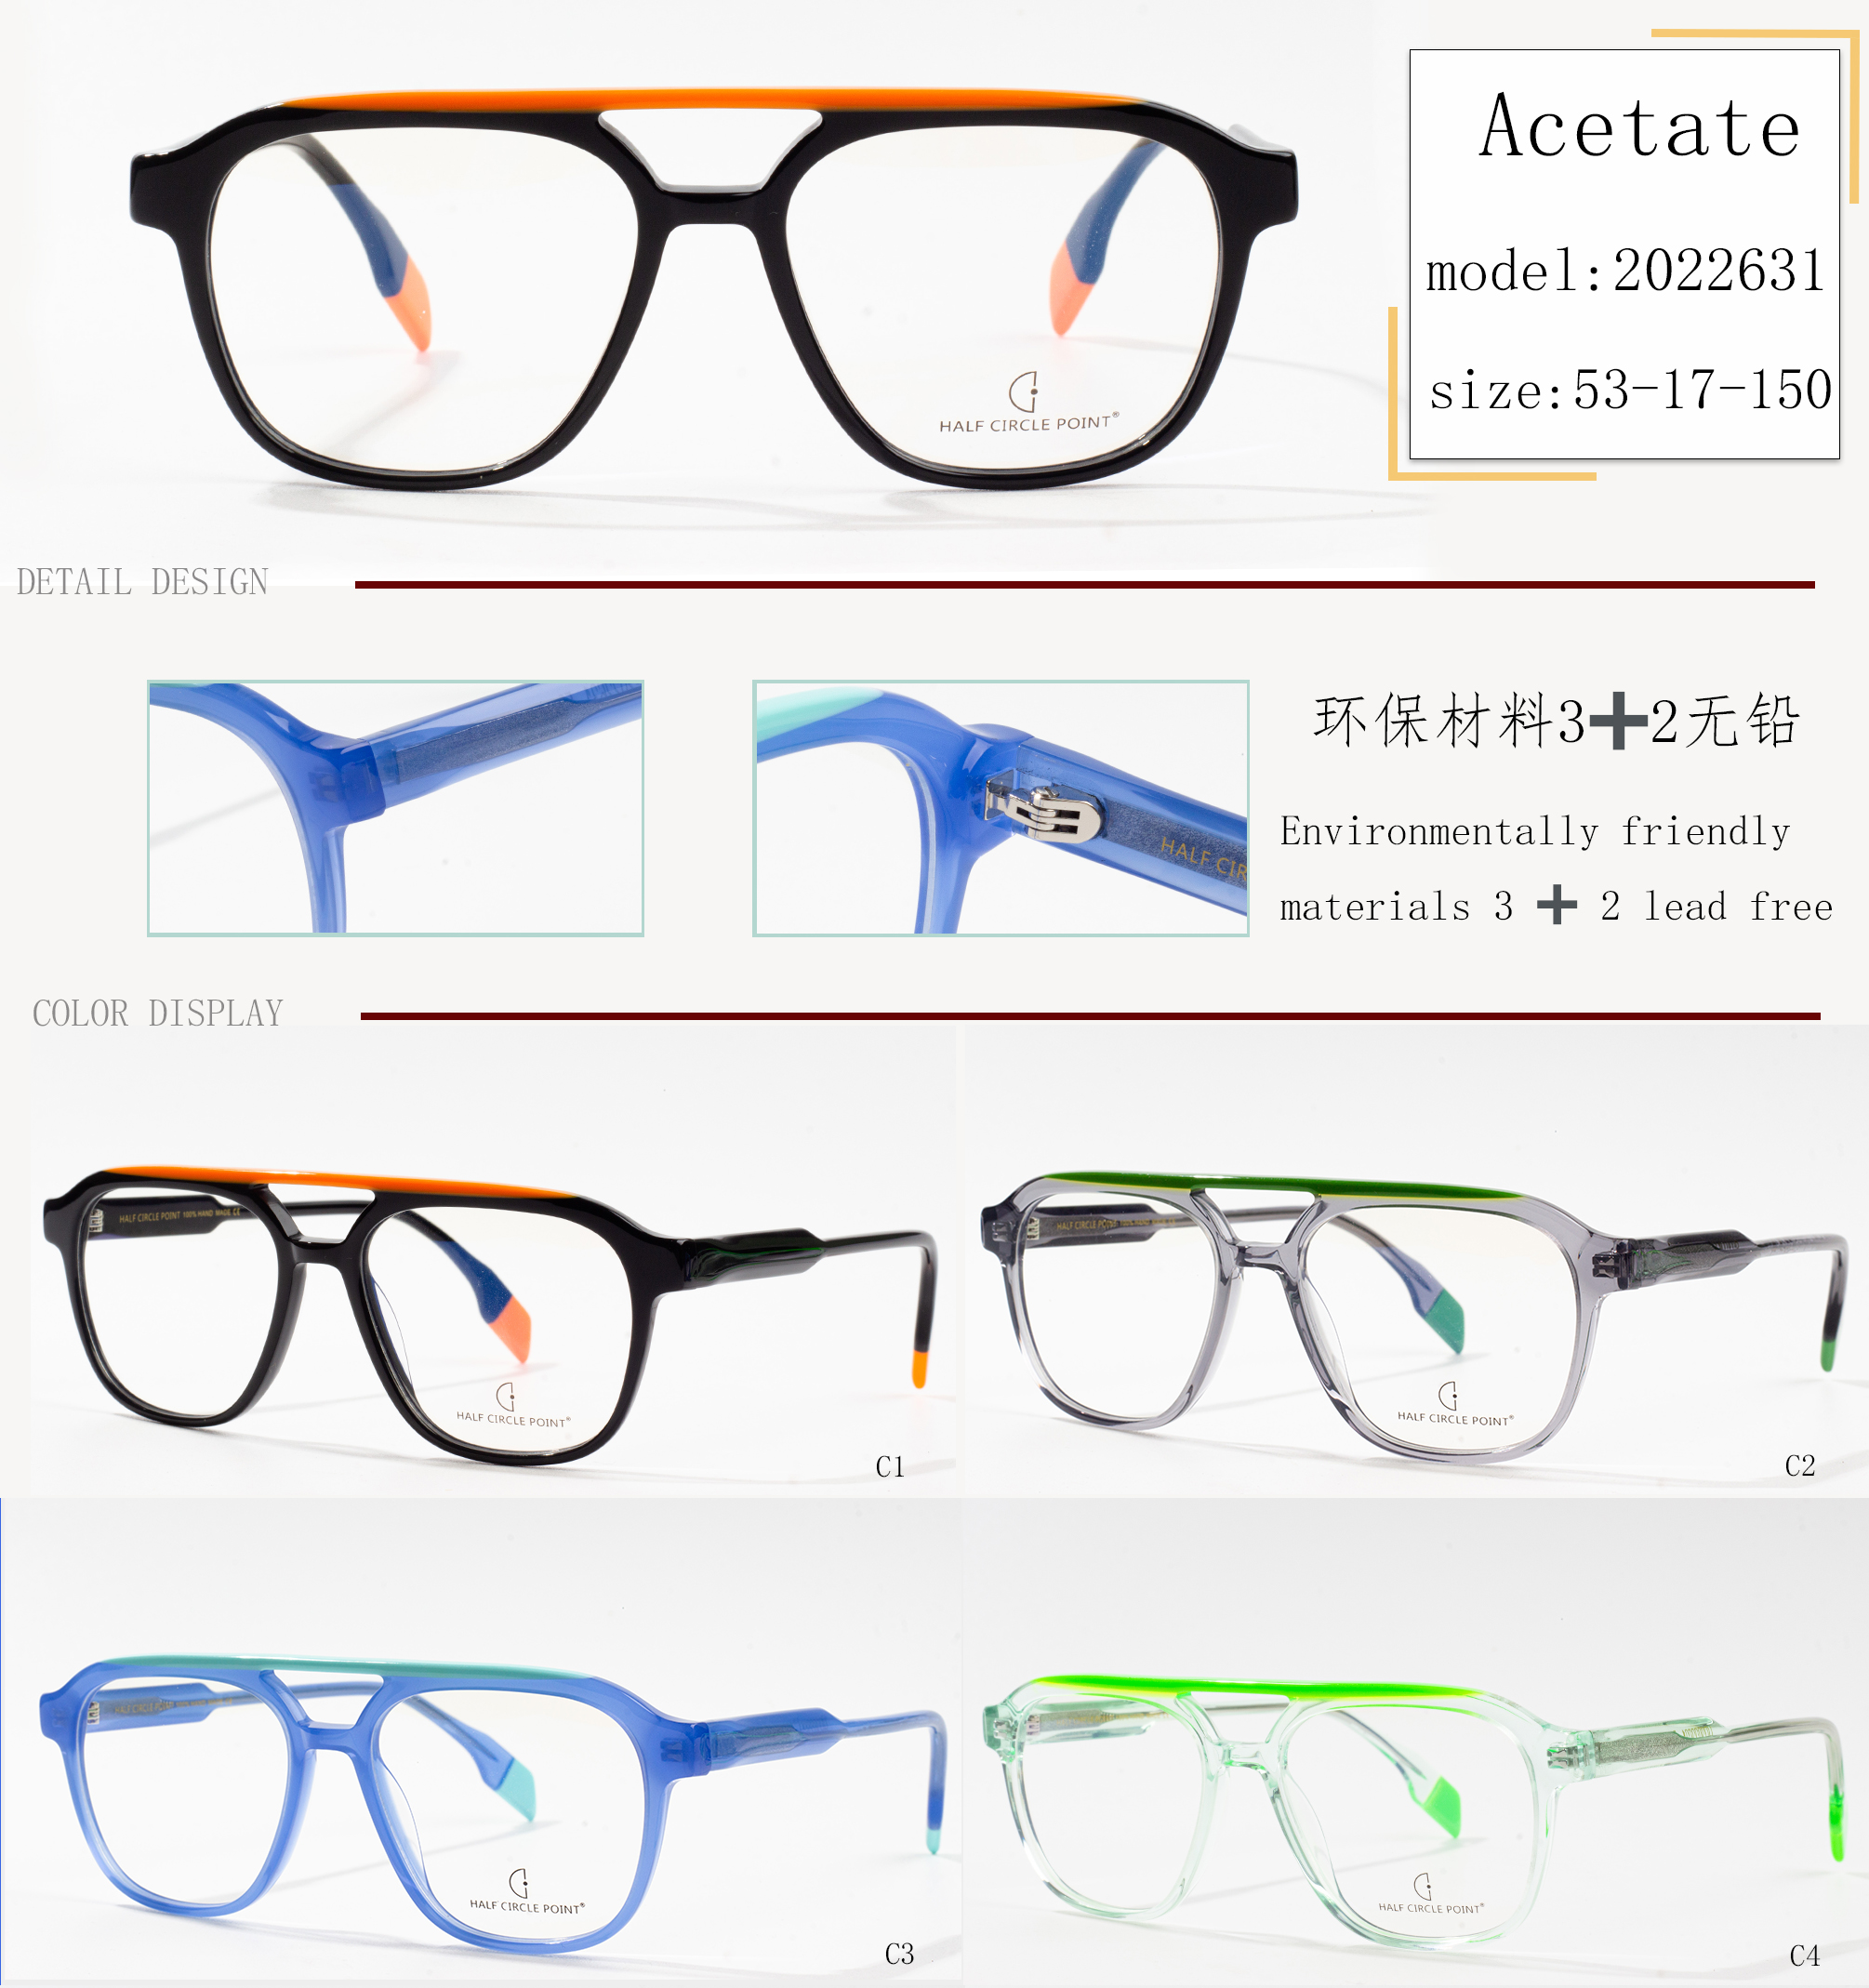 franske produsenter av brilleinnfatninger